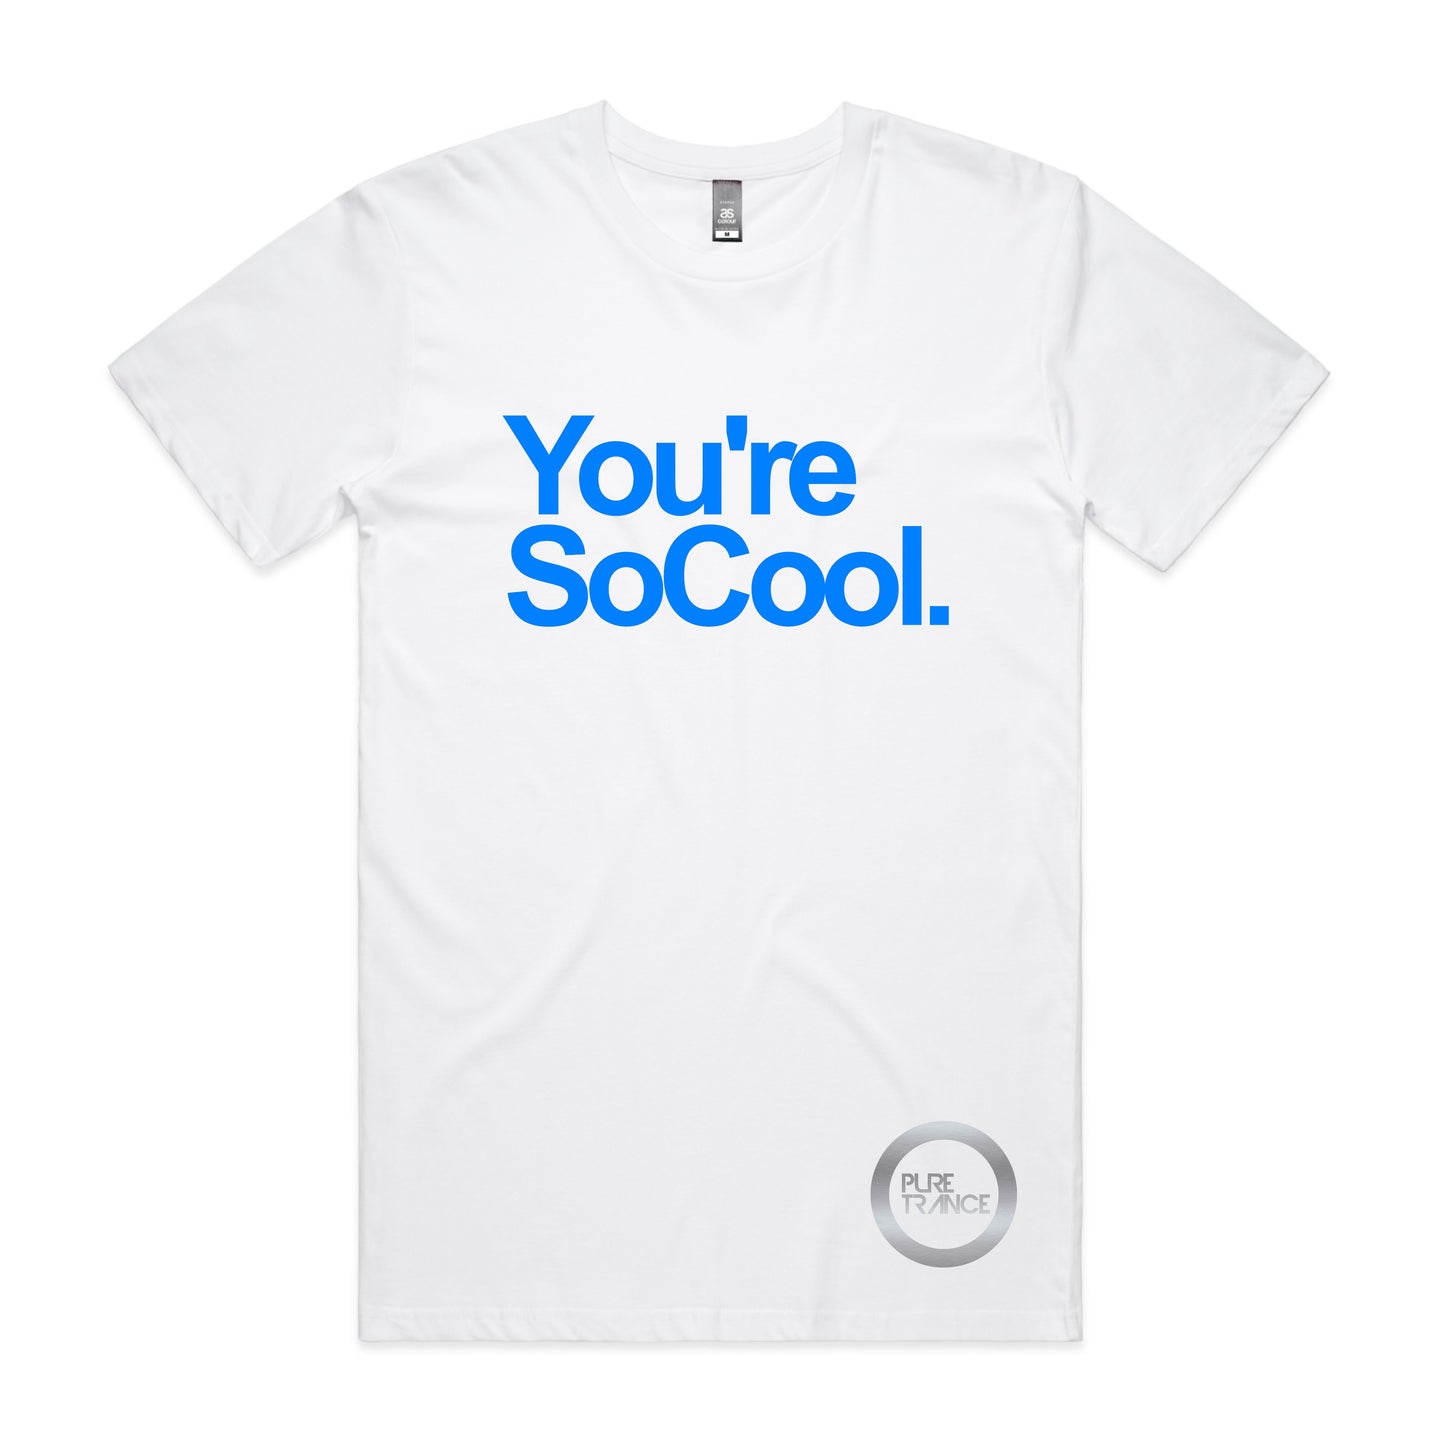 You're SoCool. Unisex Tee